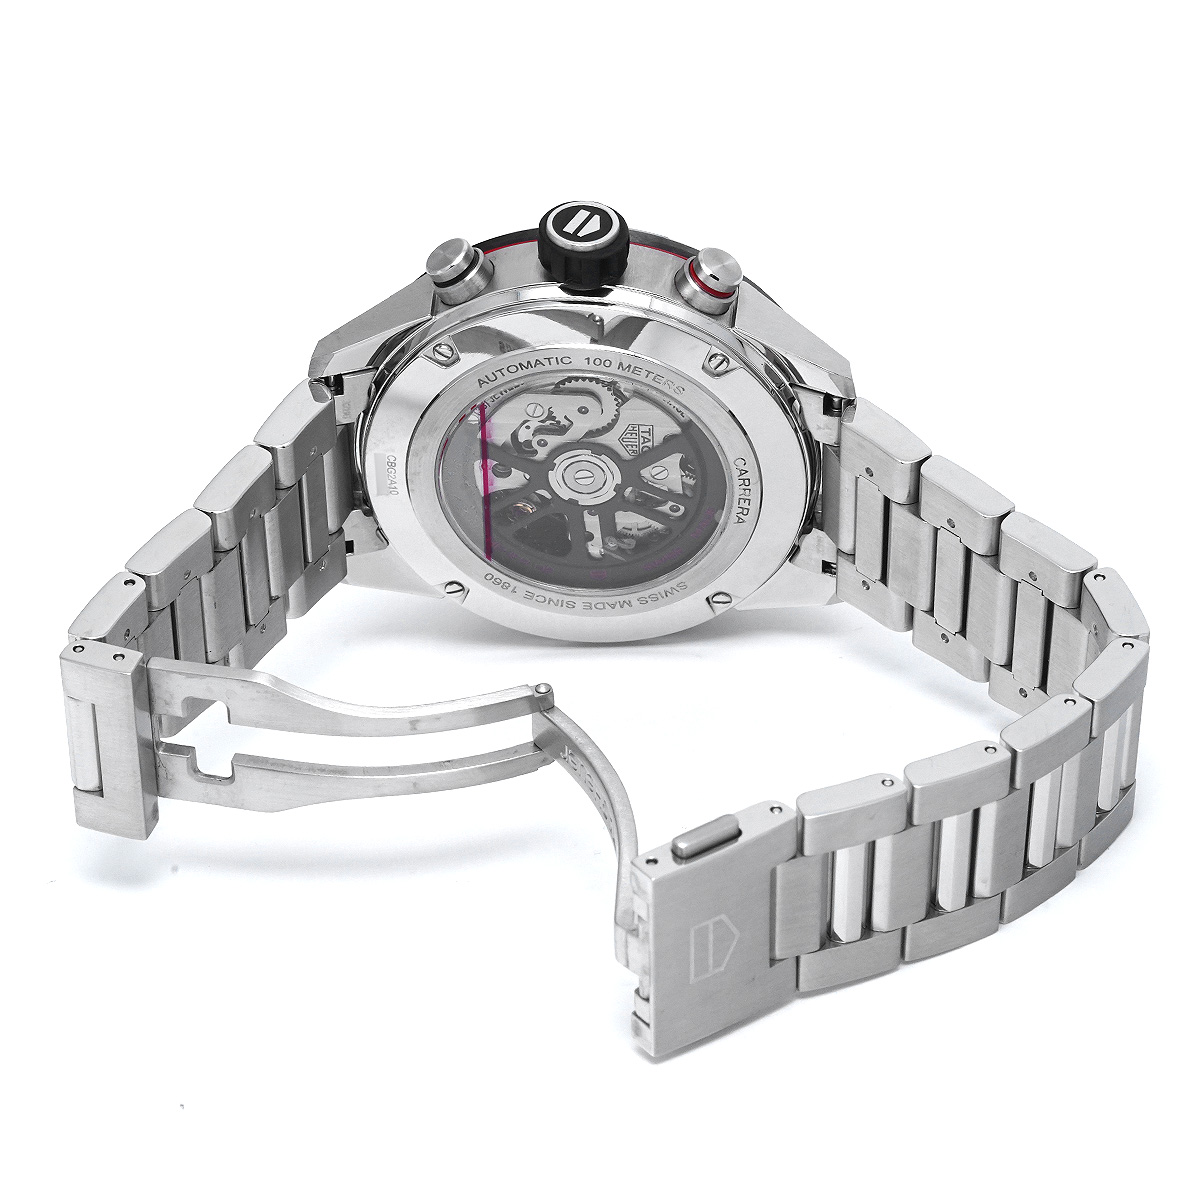 タグ ホイヤー TAG HEUER CBG2A10.BA0654 ブラック メンズ 腕時計